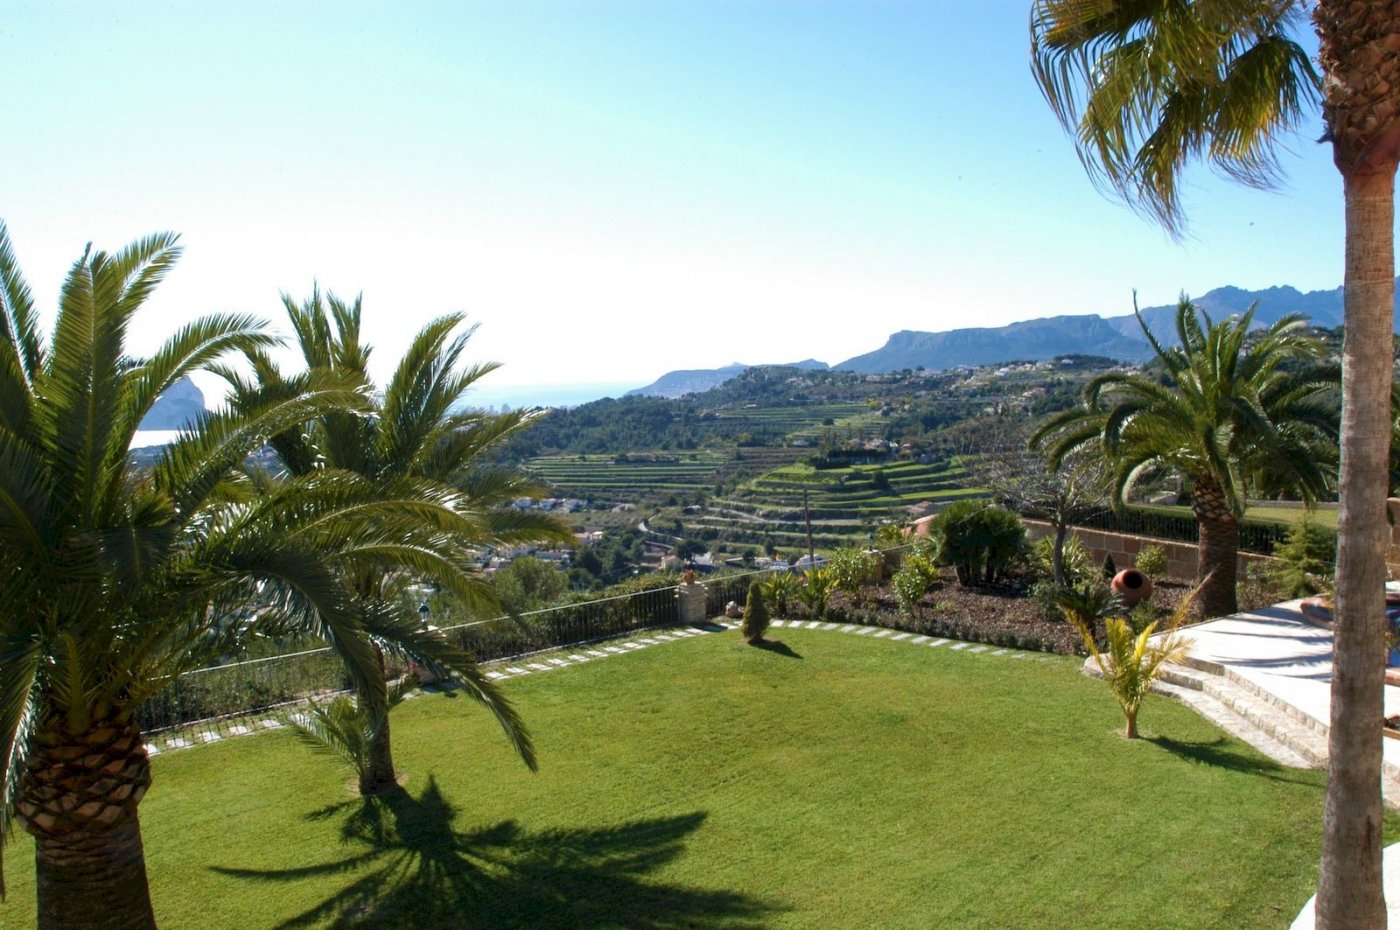 Prachtige unieke villa in mediterrane stijl in Moraira met uitzicht op zee